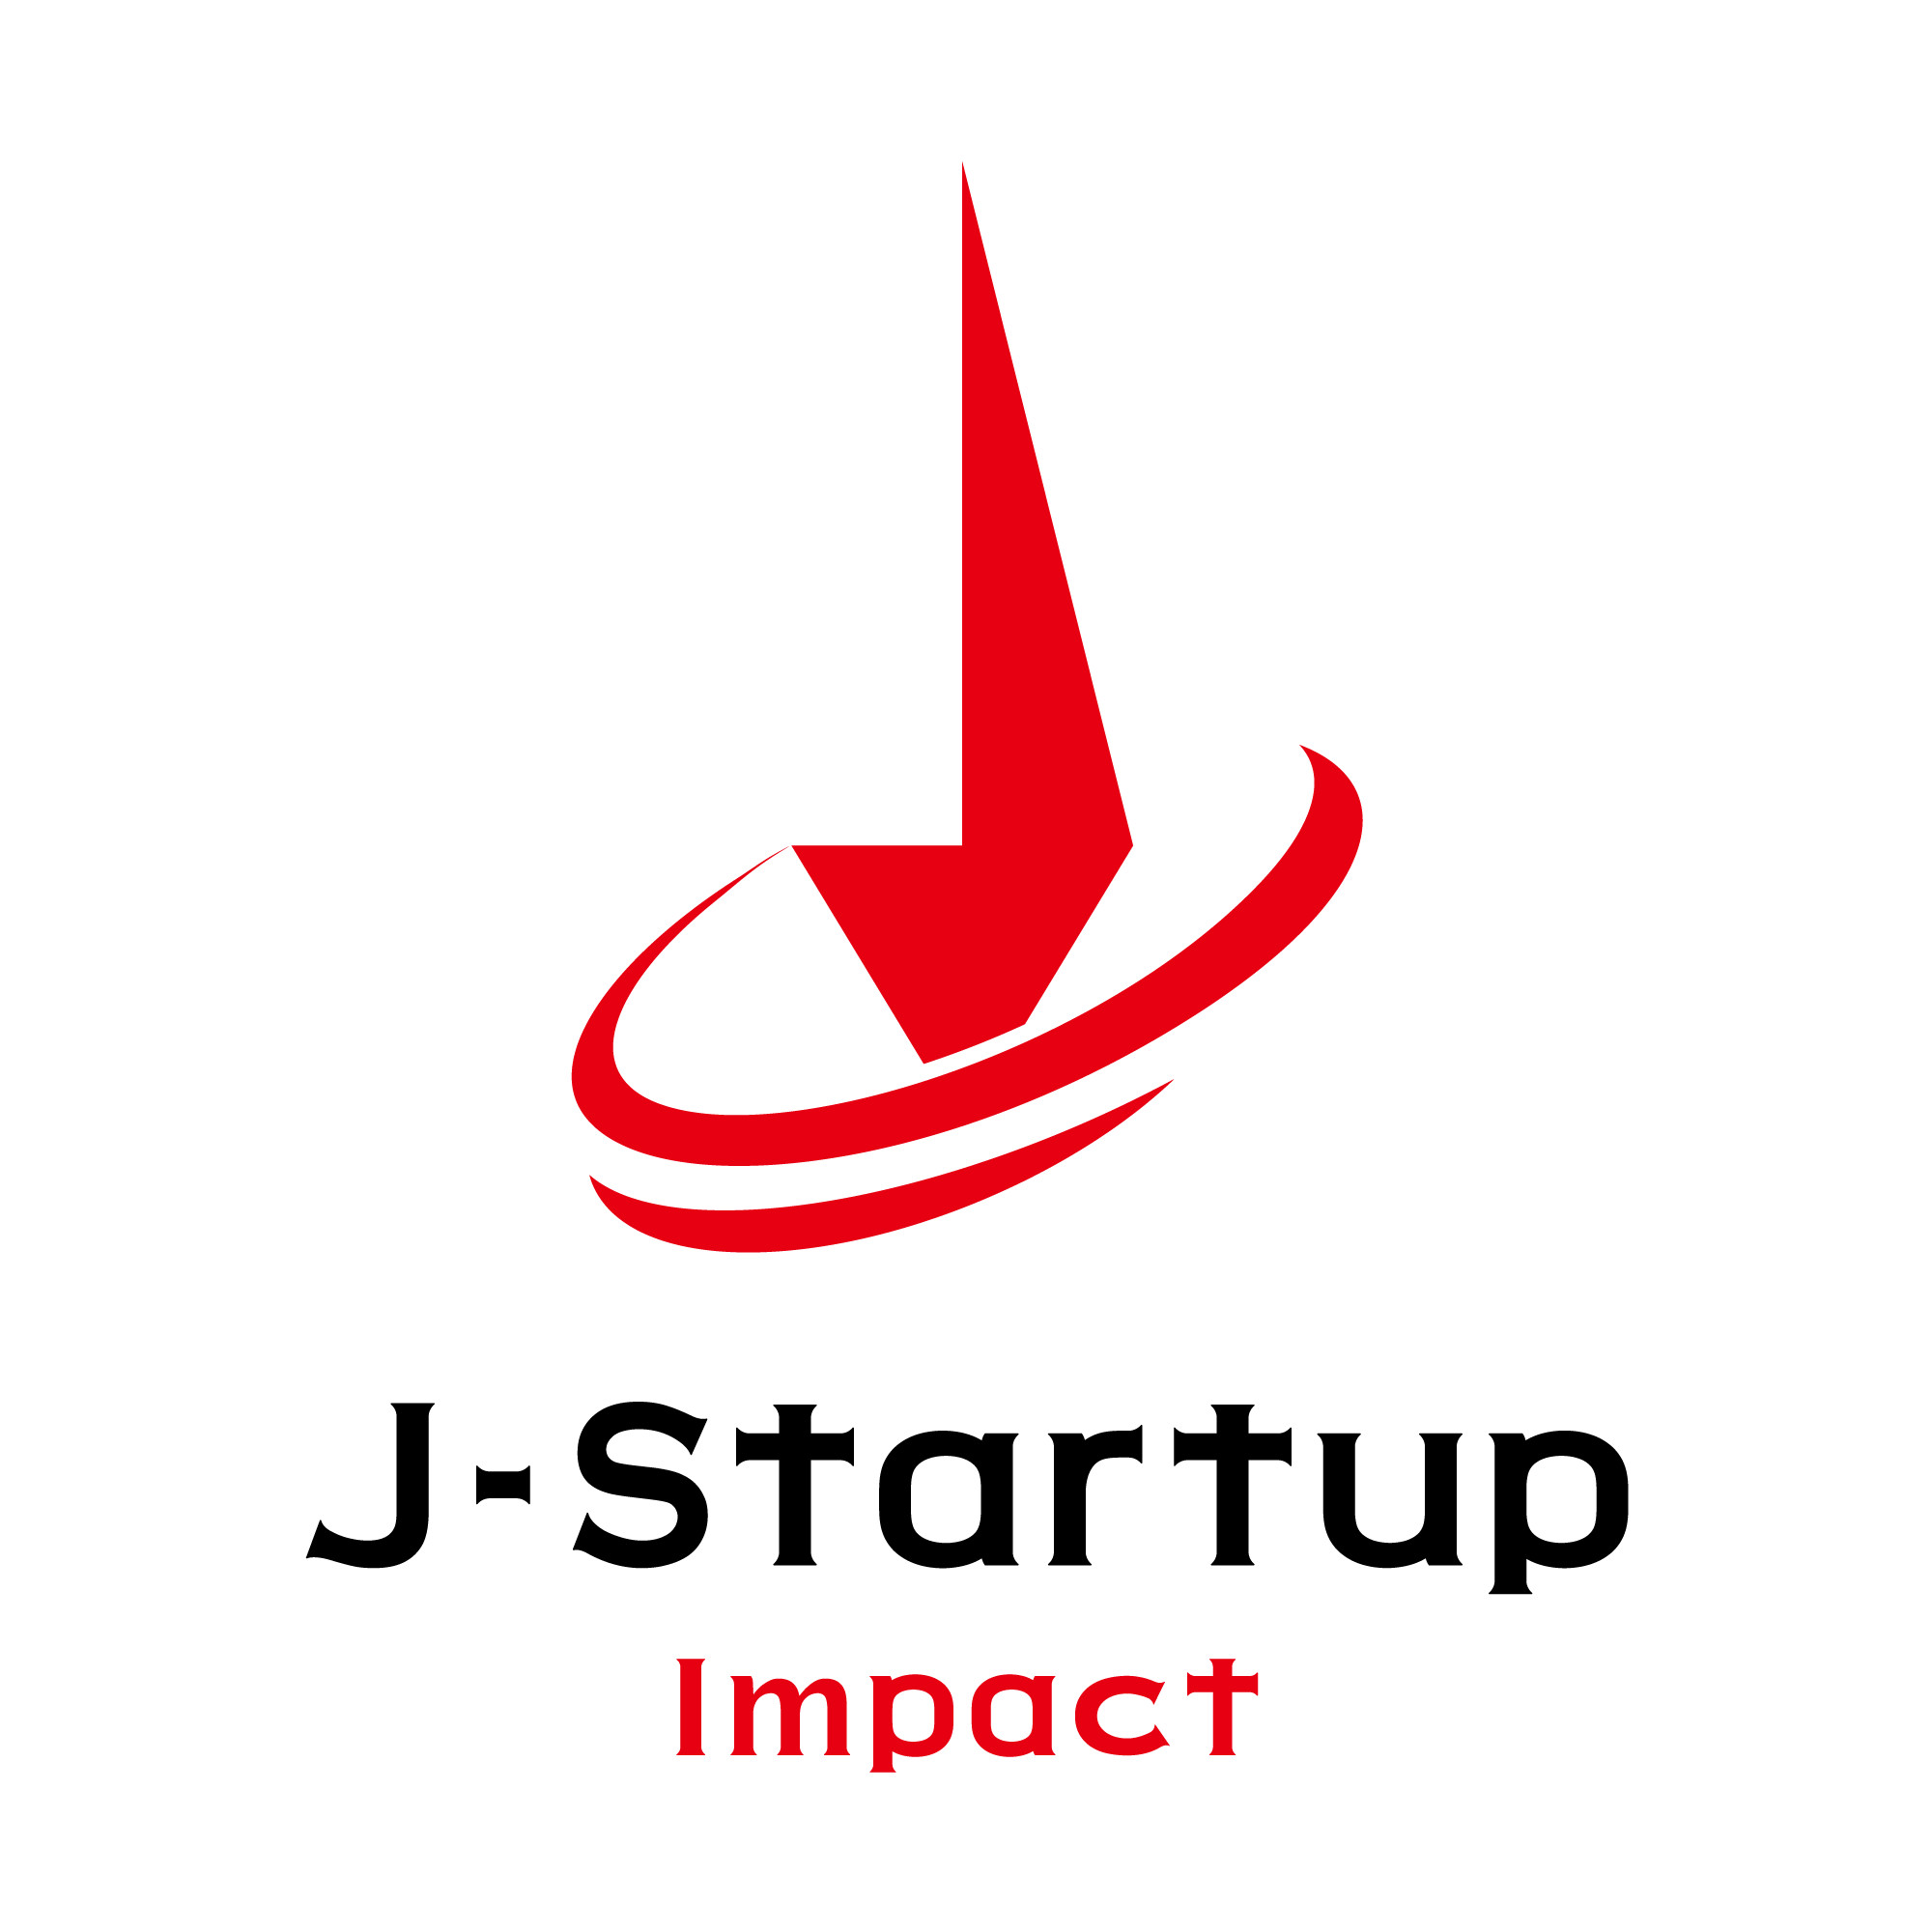 J-Startup Impact